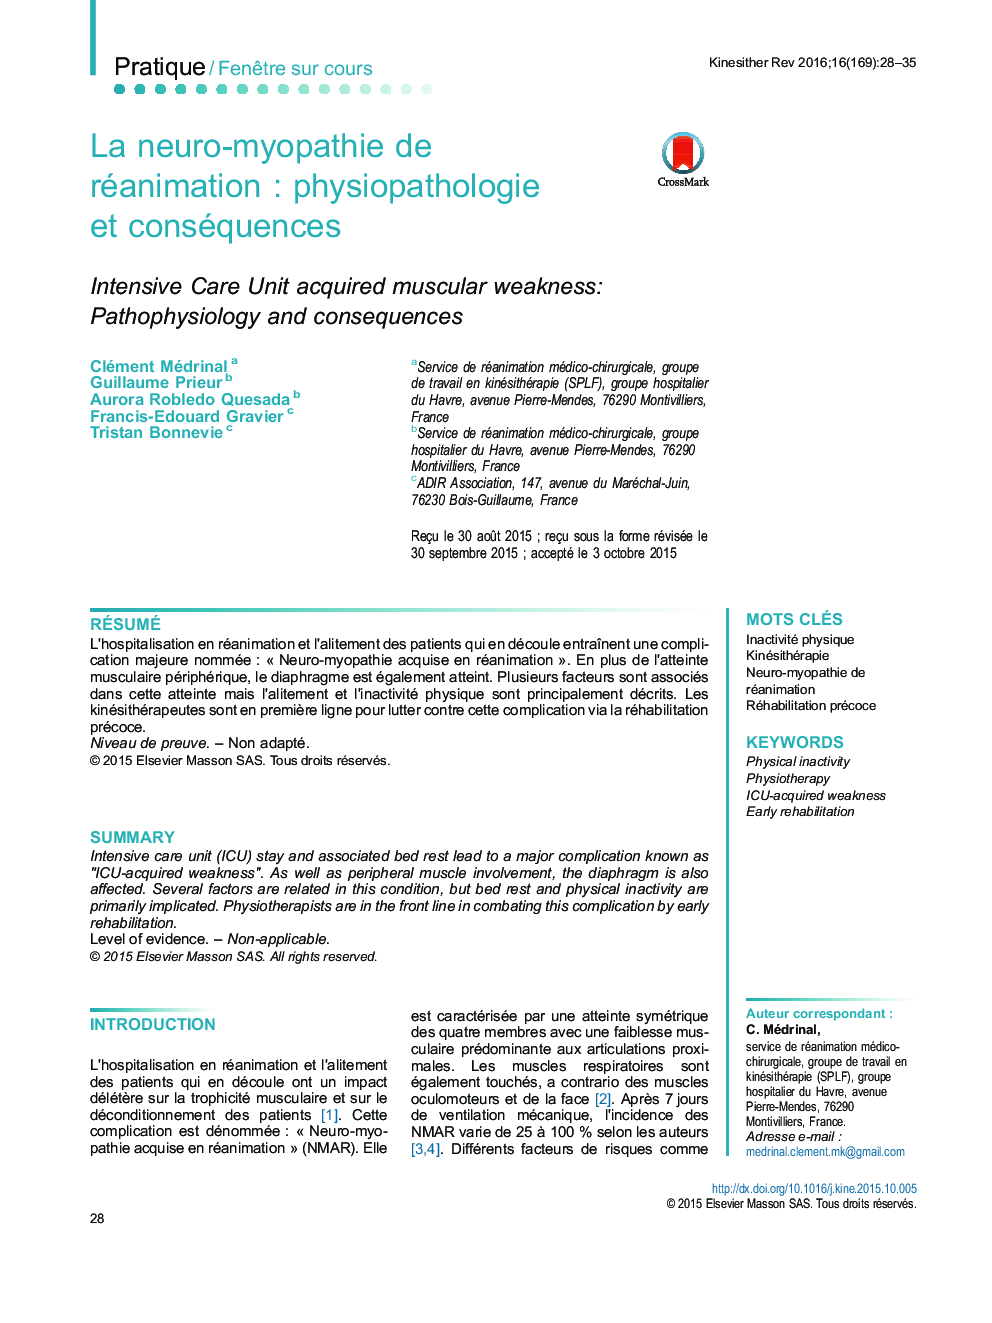 La neuro-myopathie de réanimationÂ : physiopathologie et conséquences